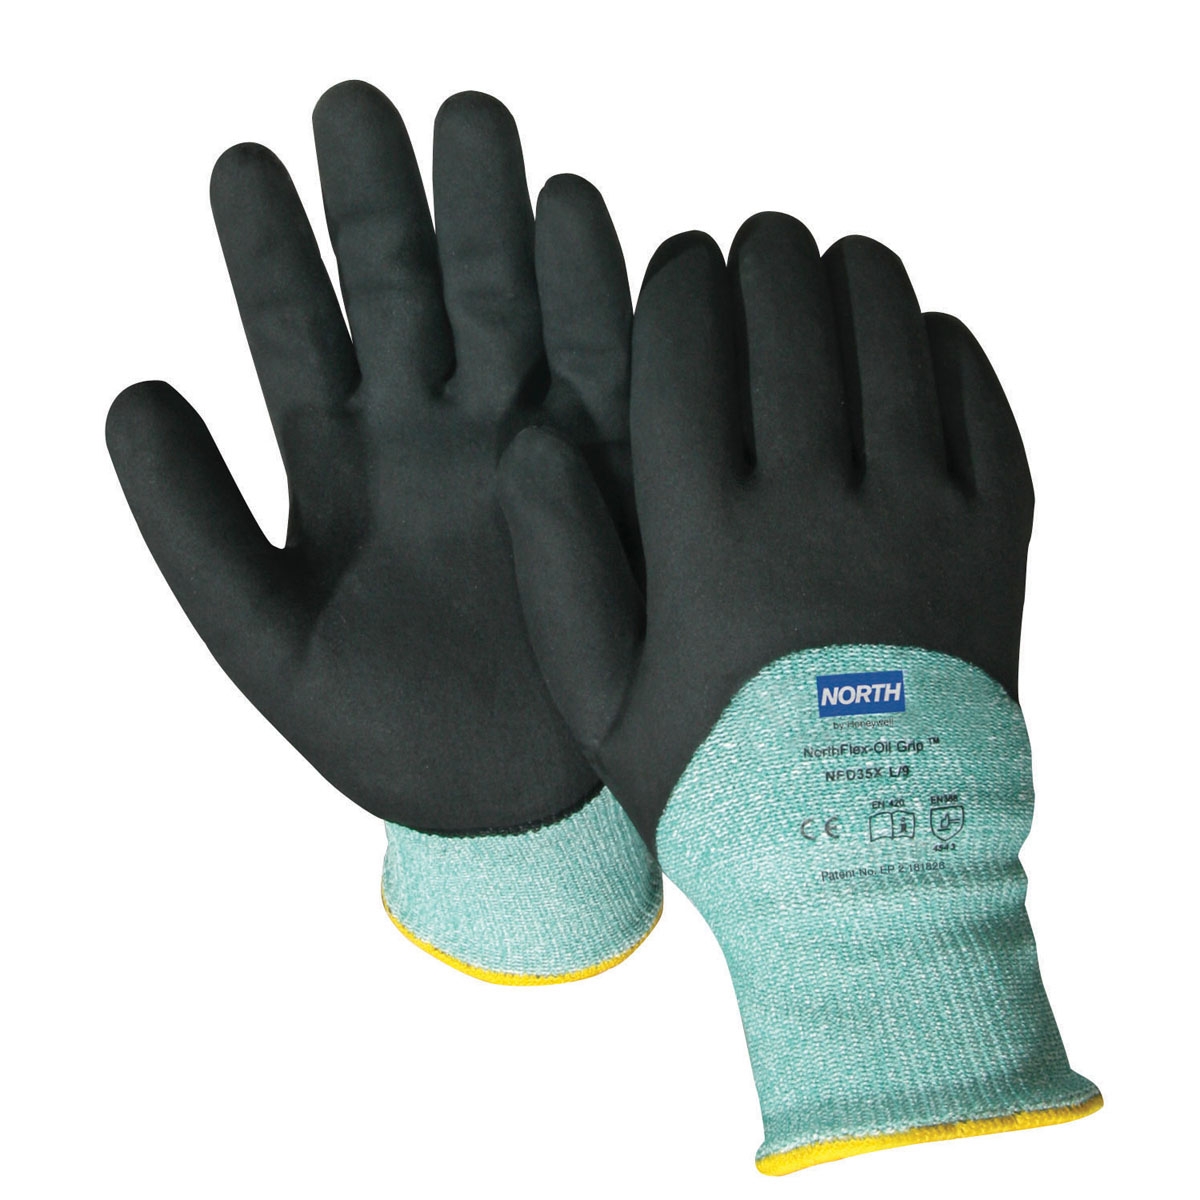 Coated Gloves, Nitrile Dip Gloves, PVC Dipped Gloves - - PIP 38